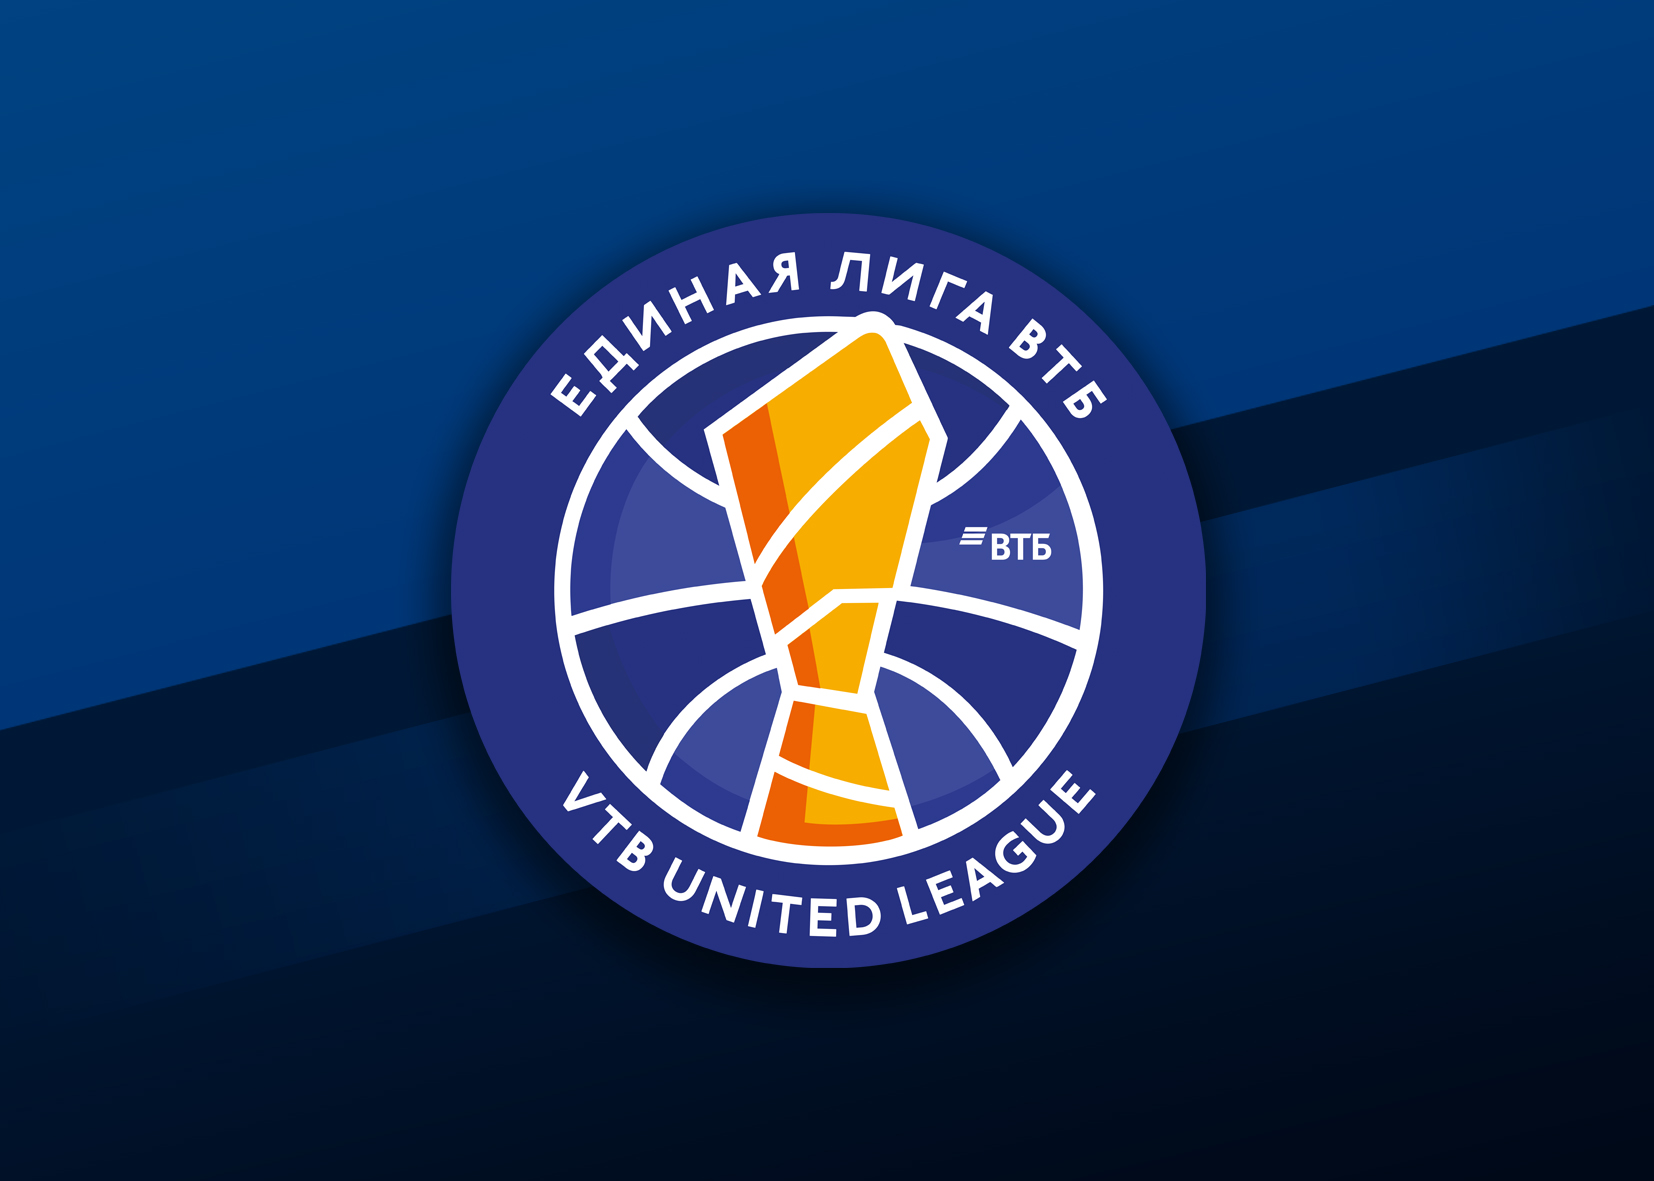 ЦСКА во втором овертайме обыграл «Зенит» в четвертом матче финальной серии Единой лиги ВТБ